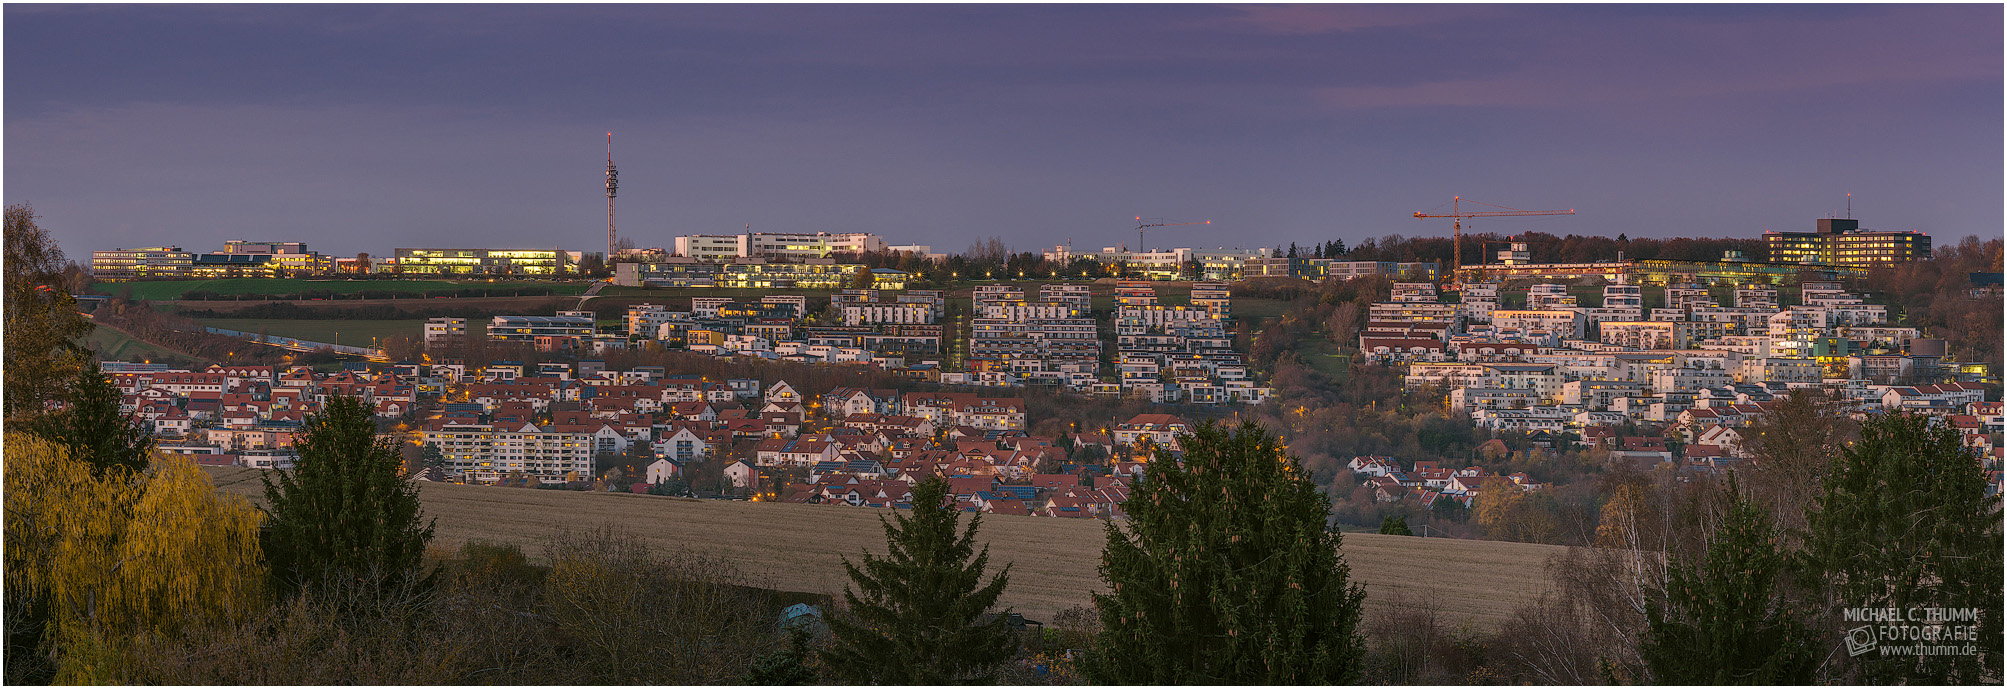 Panoramafoto vom Kohlfeld aus gesehen 2015